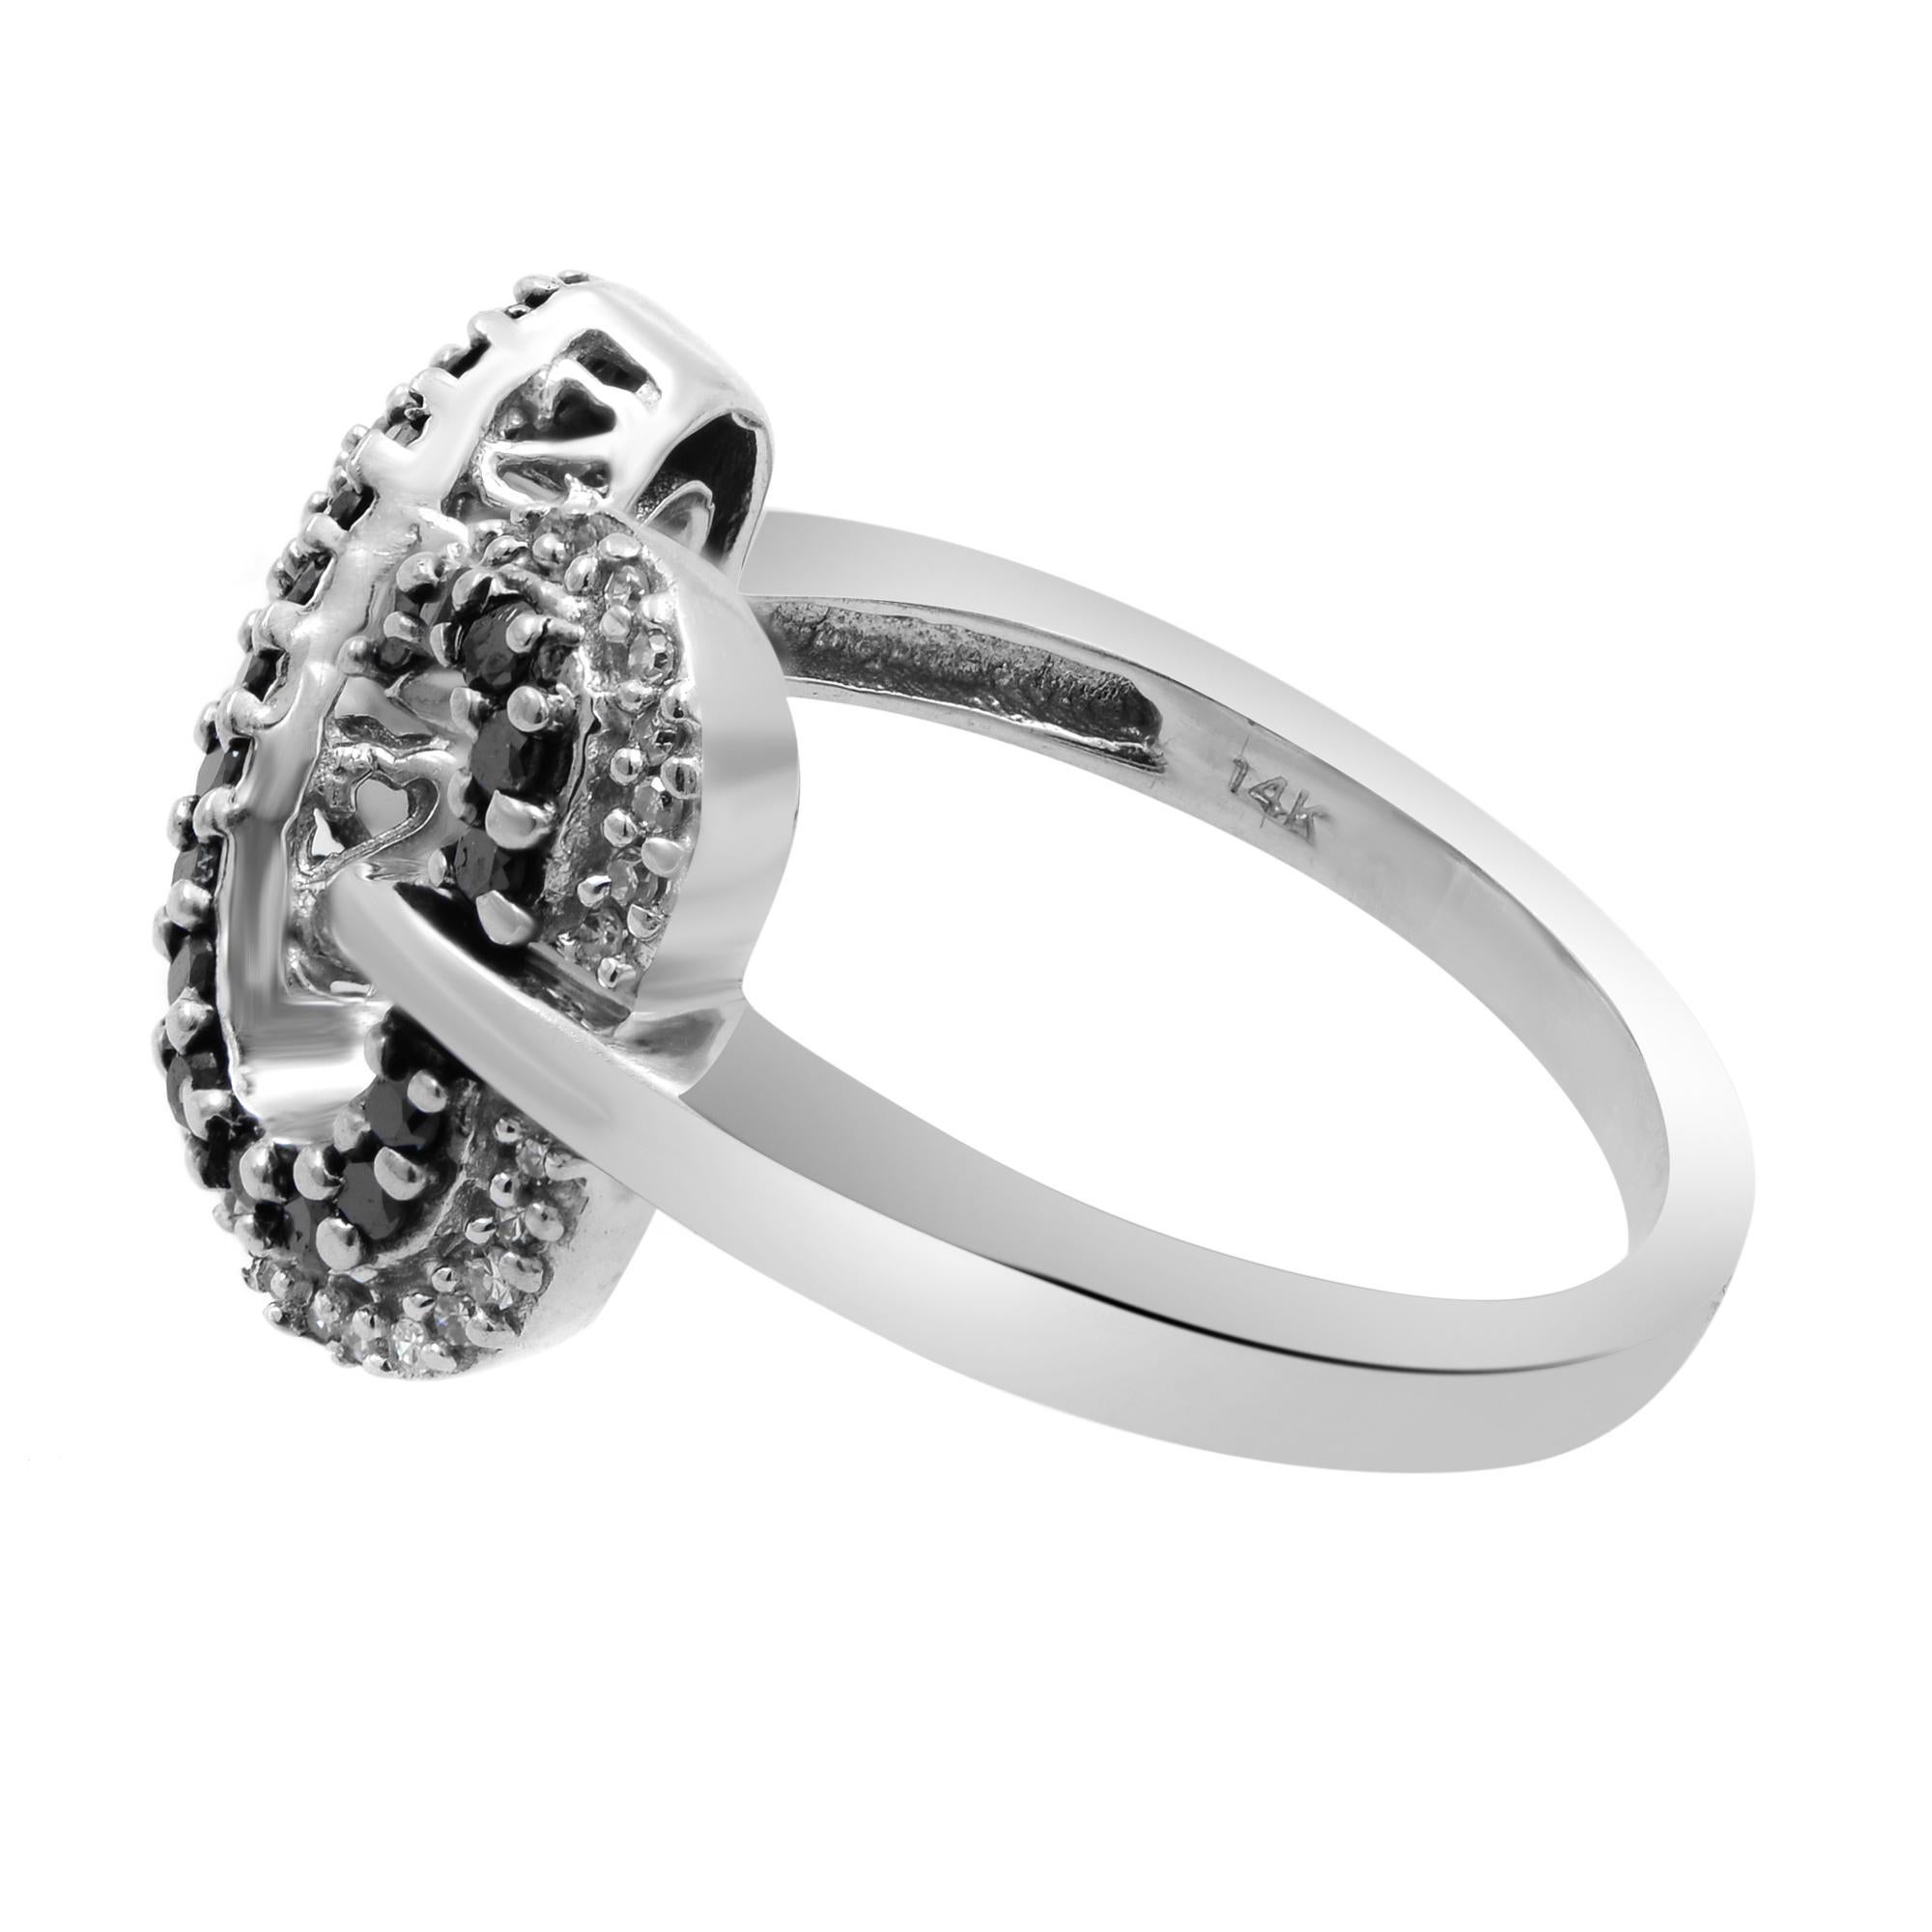 Modern Rachel Koen 0.50Ctw Black & White Diamond Ladies Ring 14K White Gold Size 6.75 For Sale